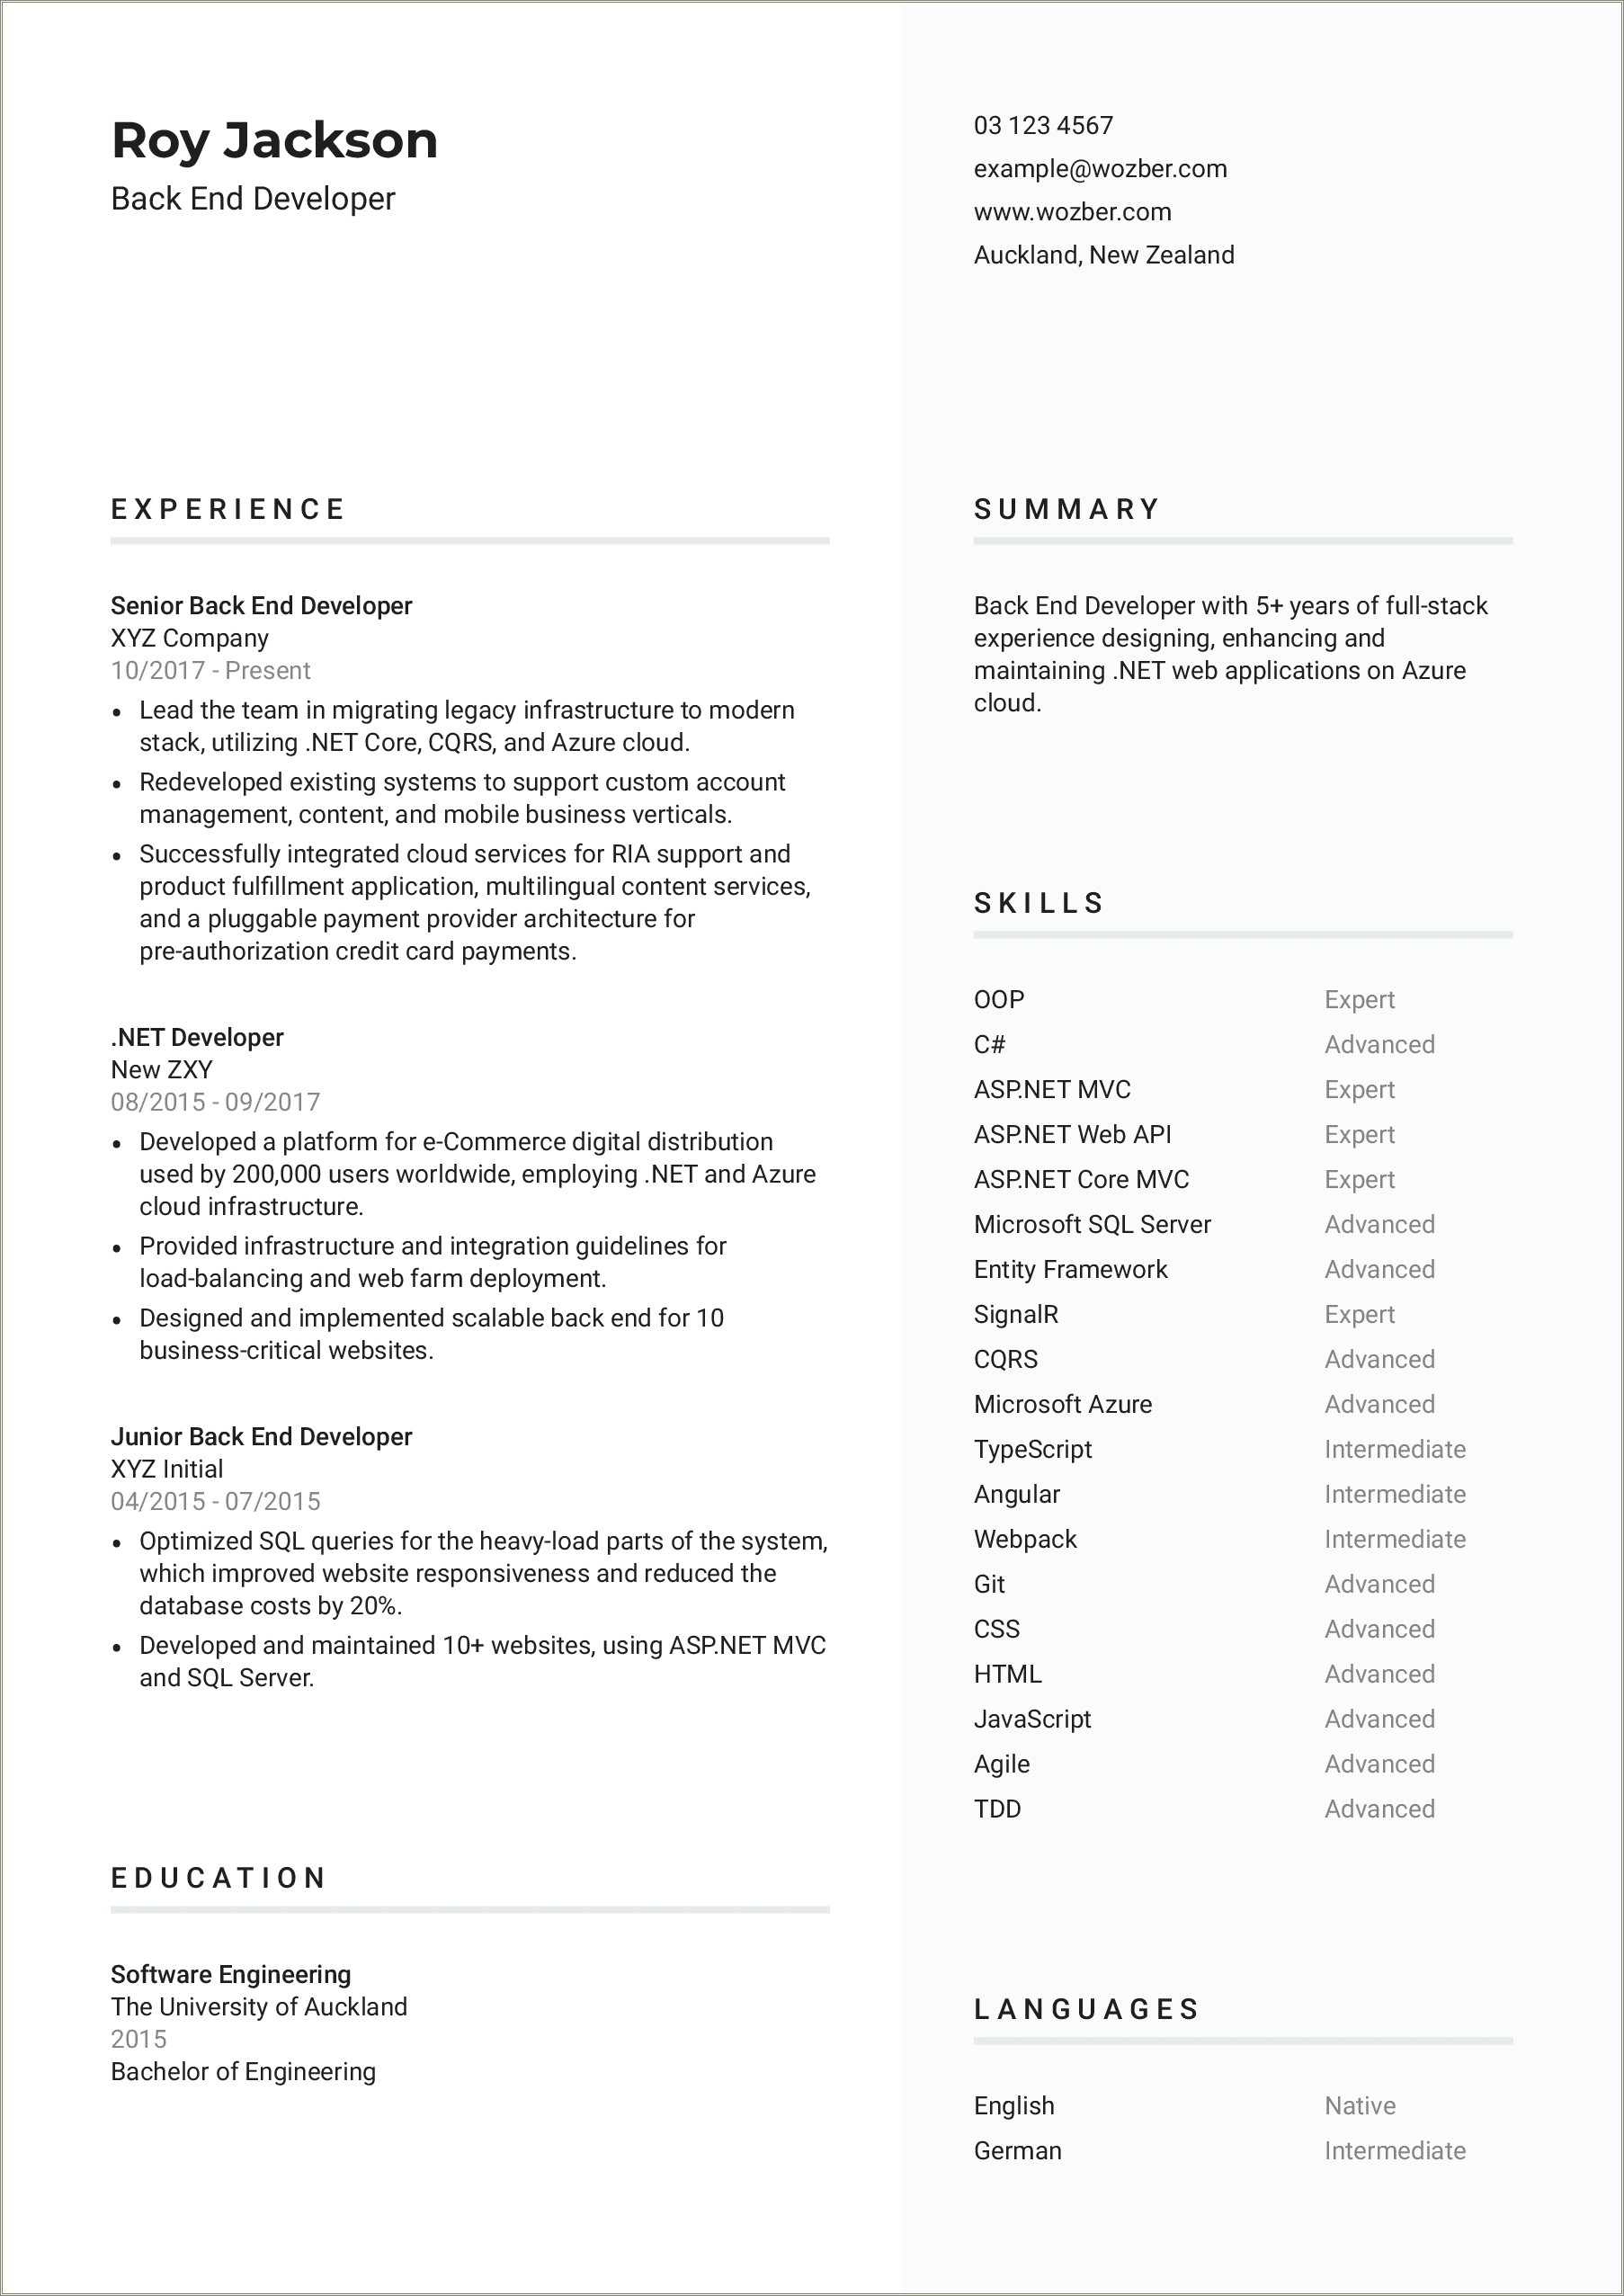 Resume Description For Full Stack Developer